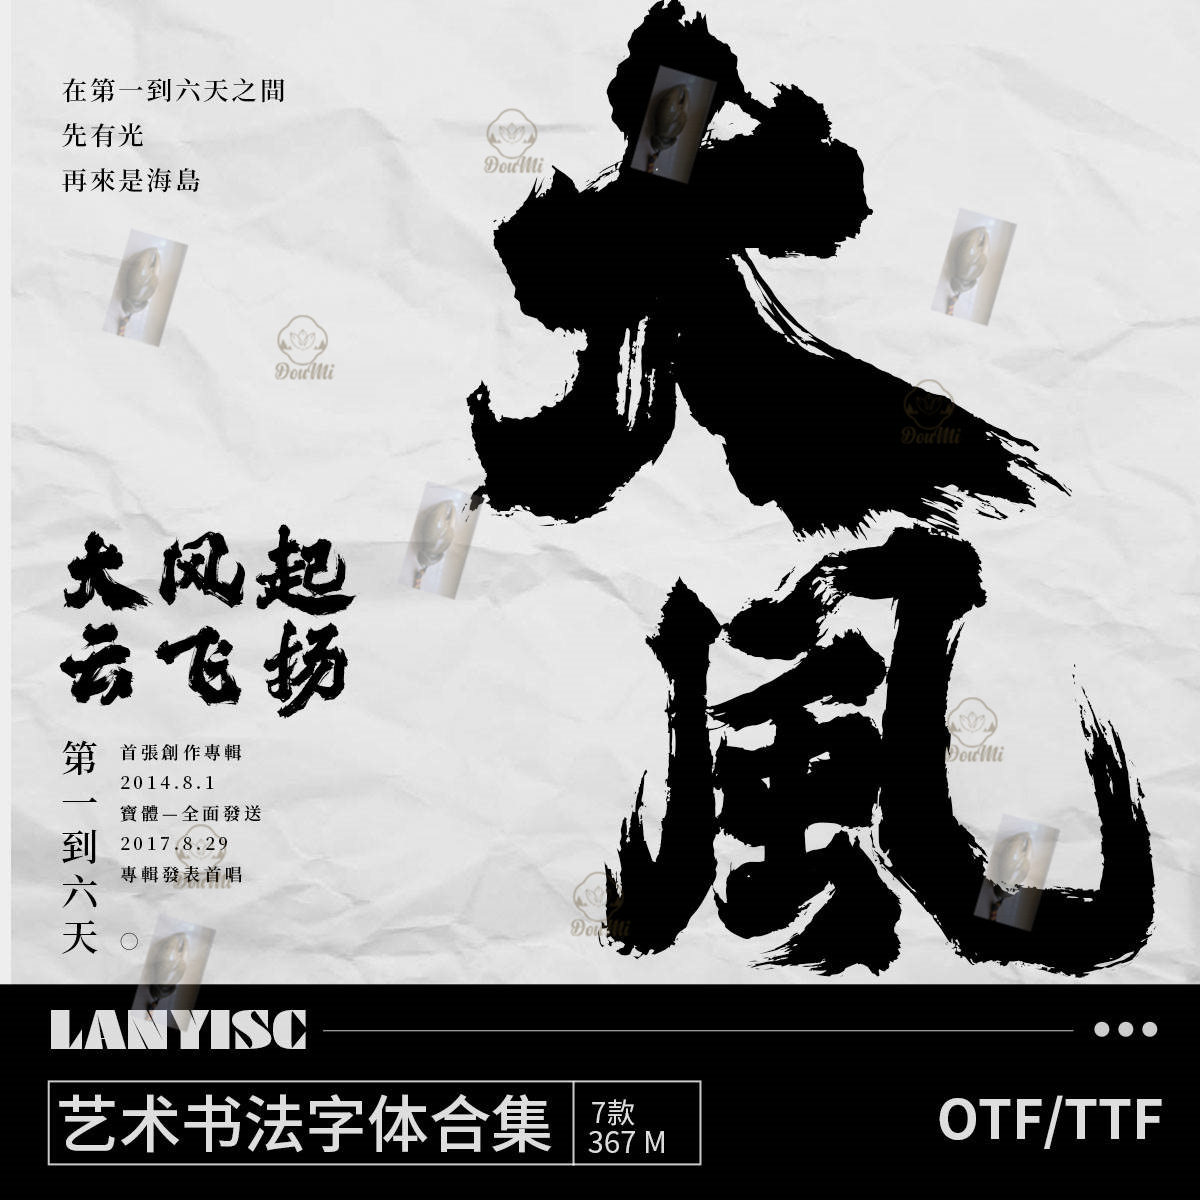 中式大气磅礴书法毛笔字体古风中文字体海报视频procreate ps字体